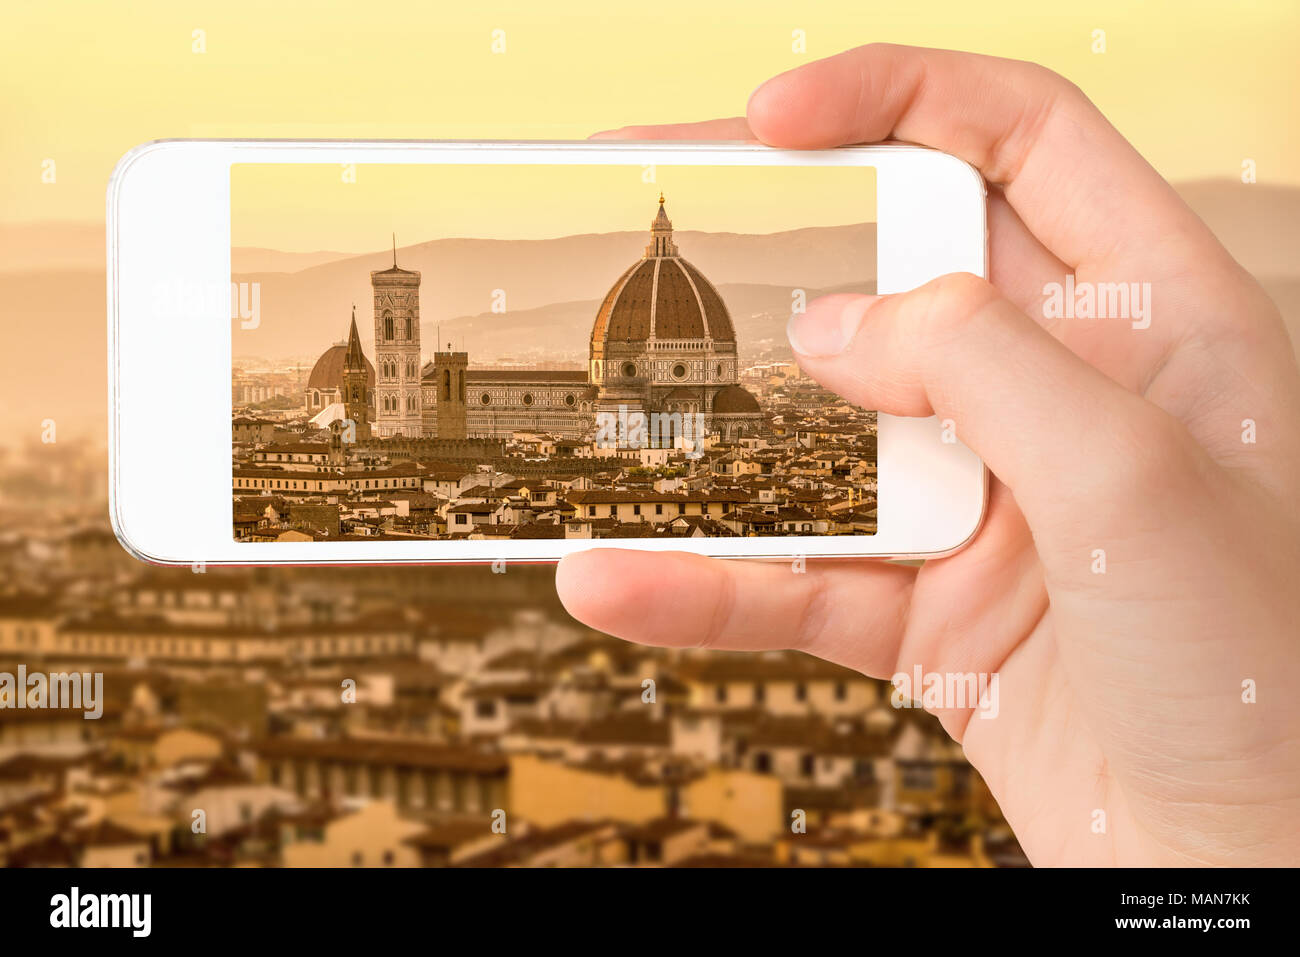 Libre d'une part avec le smartphone de prendre une photo de Florence avec la Basilique Santa Maria del Fiore (Duomo), Toscane, Italie Banque D'Images